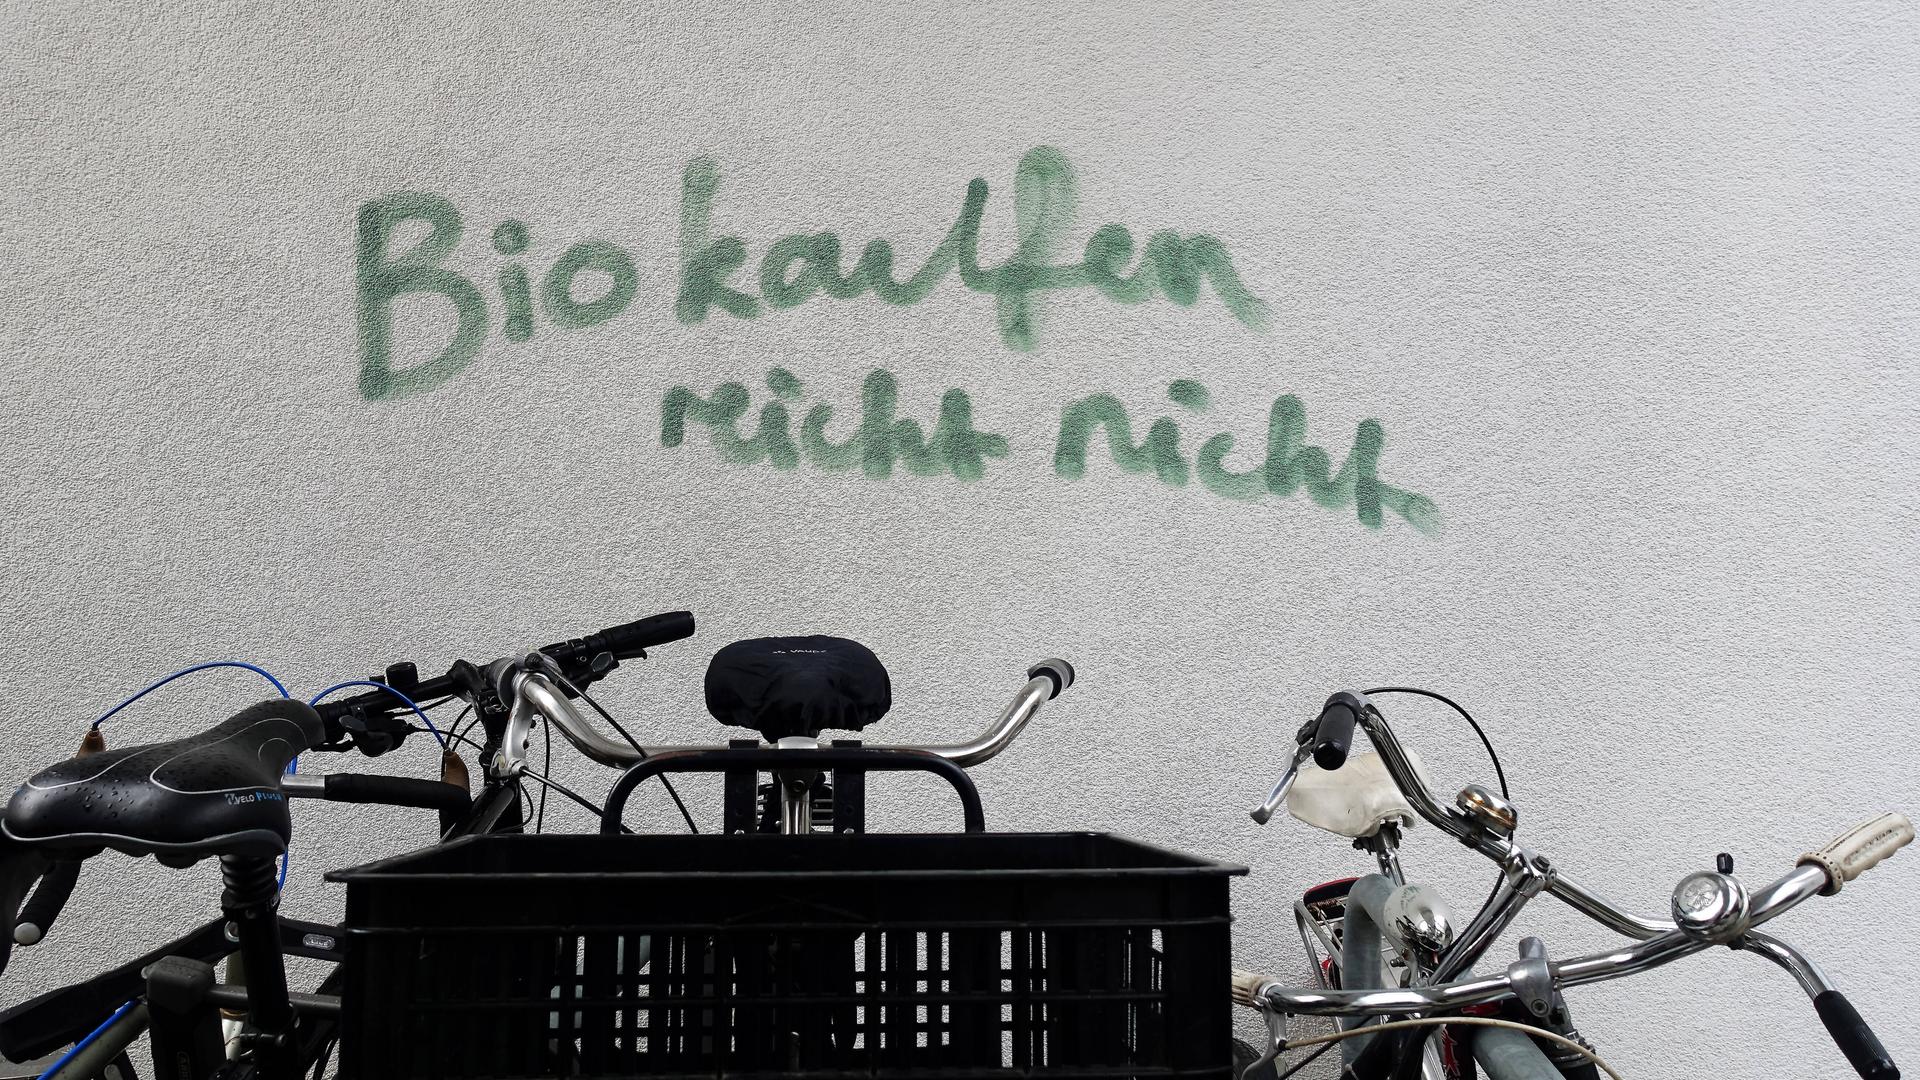 Auf einer Hauswand steht ein Graffito: "Bio kaufen reicht nicht", im Vordergrund sind Fahrräder zu sehen.